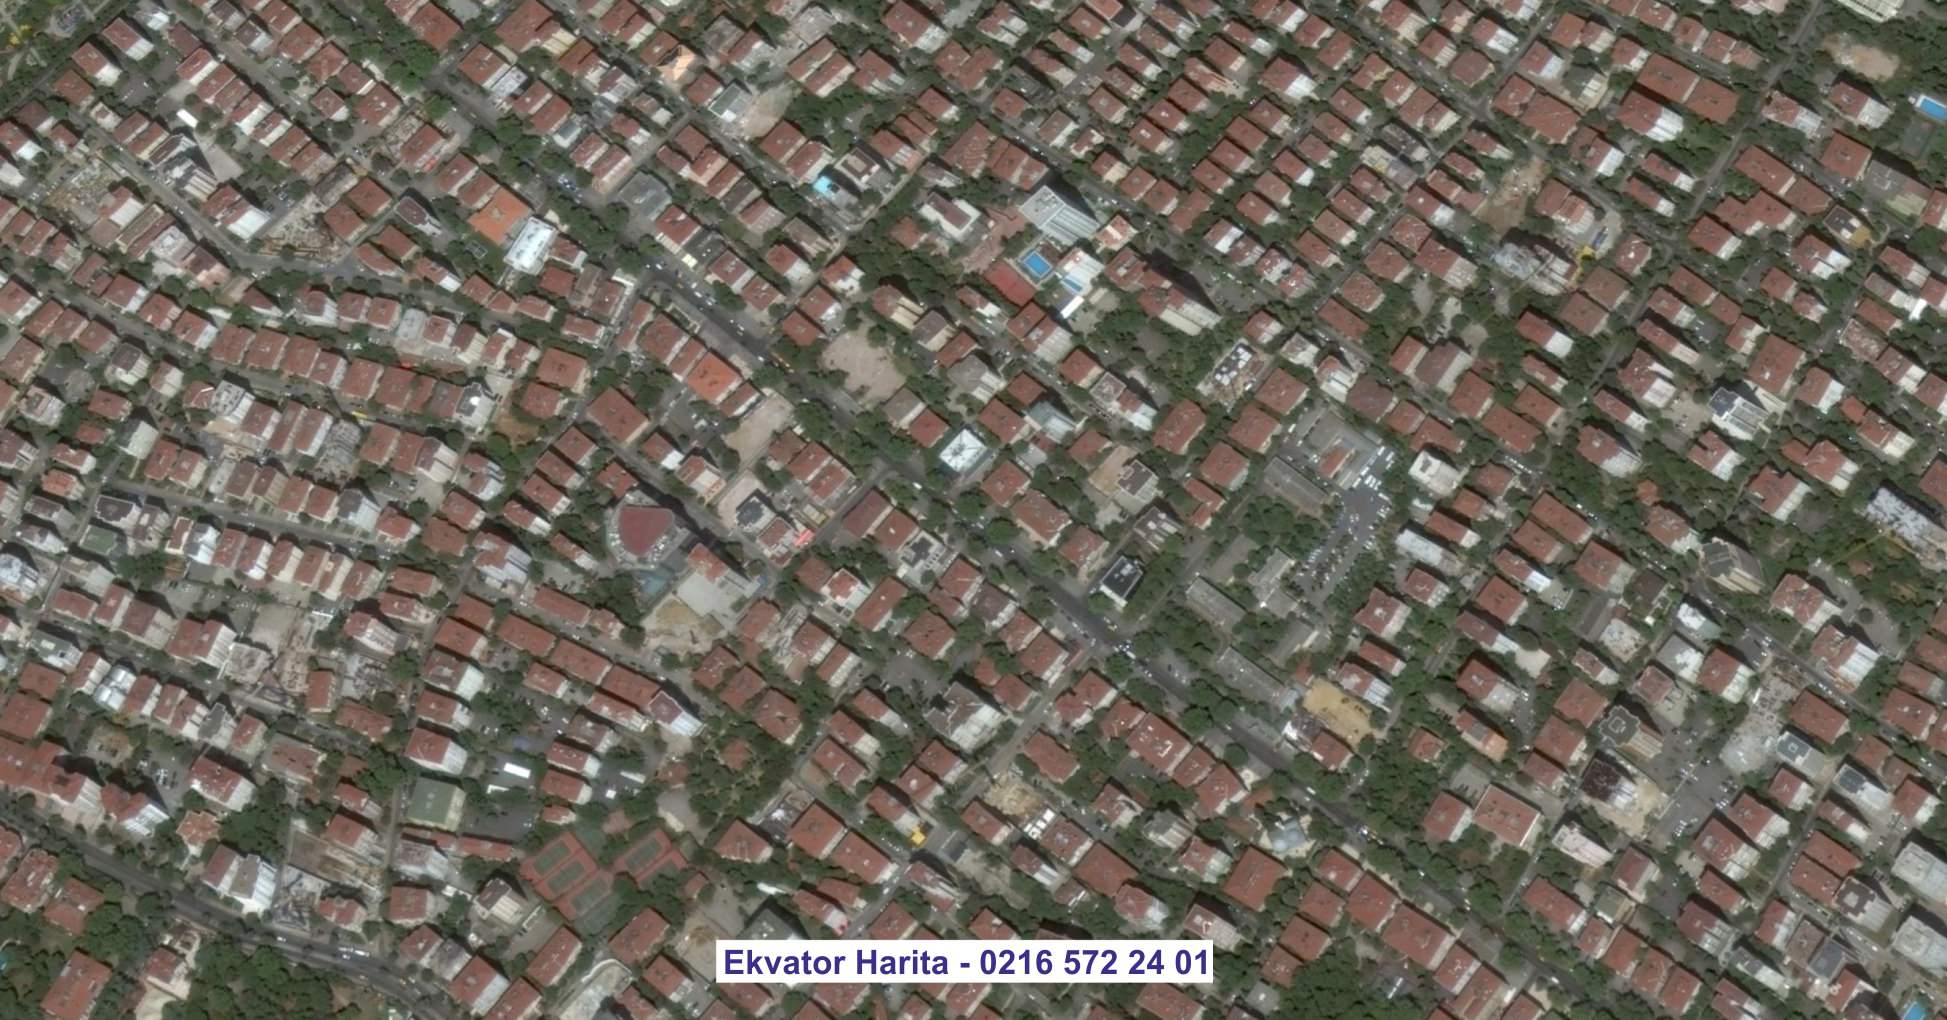 Çekmeköy Uydu Görüntüsü Örnek Fotoğrafı